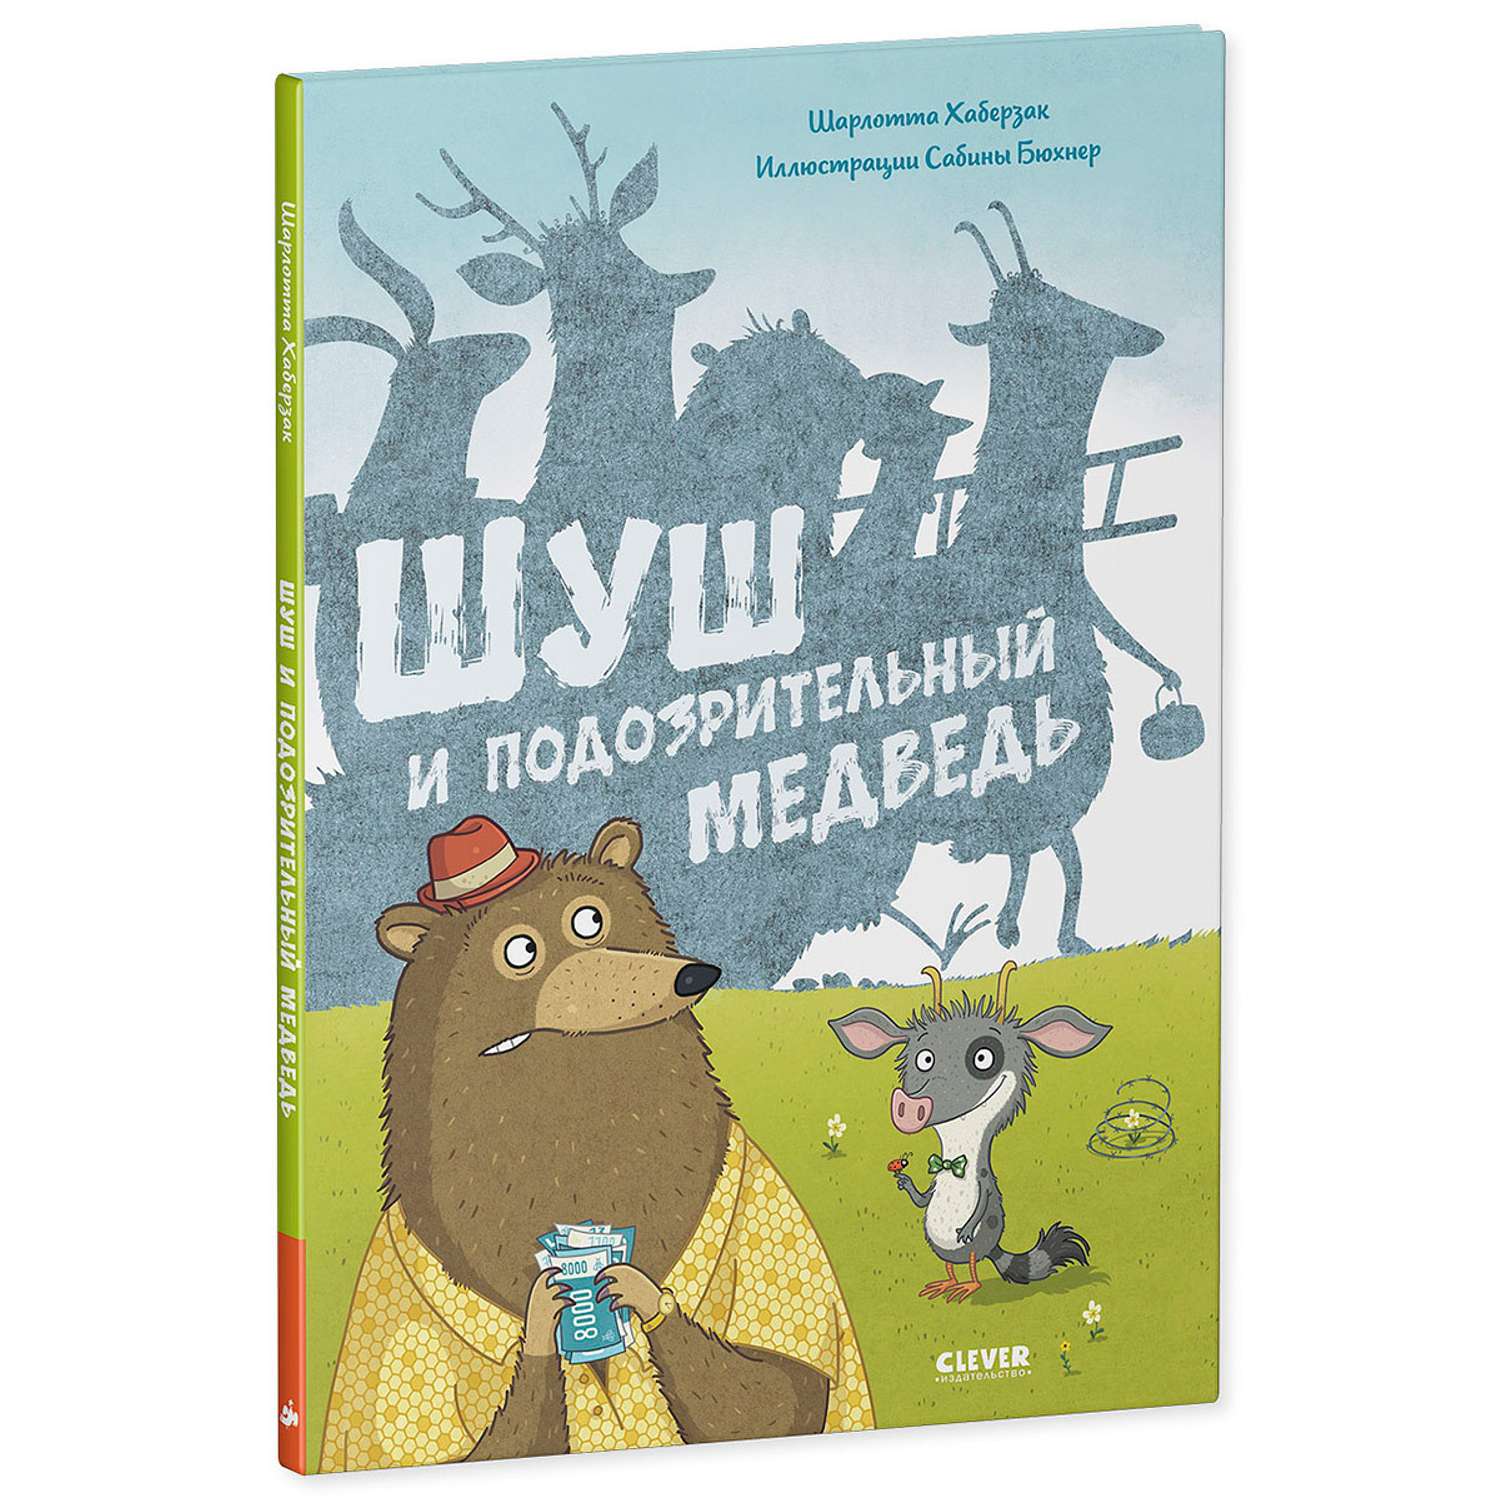 Книжка с картинками Clever Издательство Шуш и подозрительный медведь - фото 2